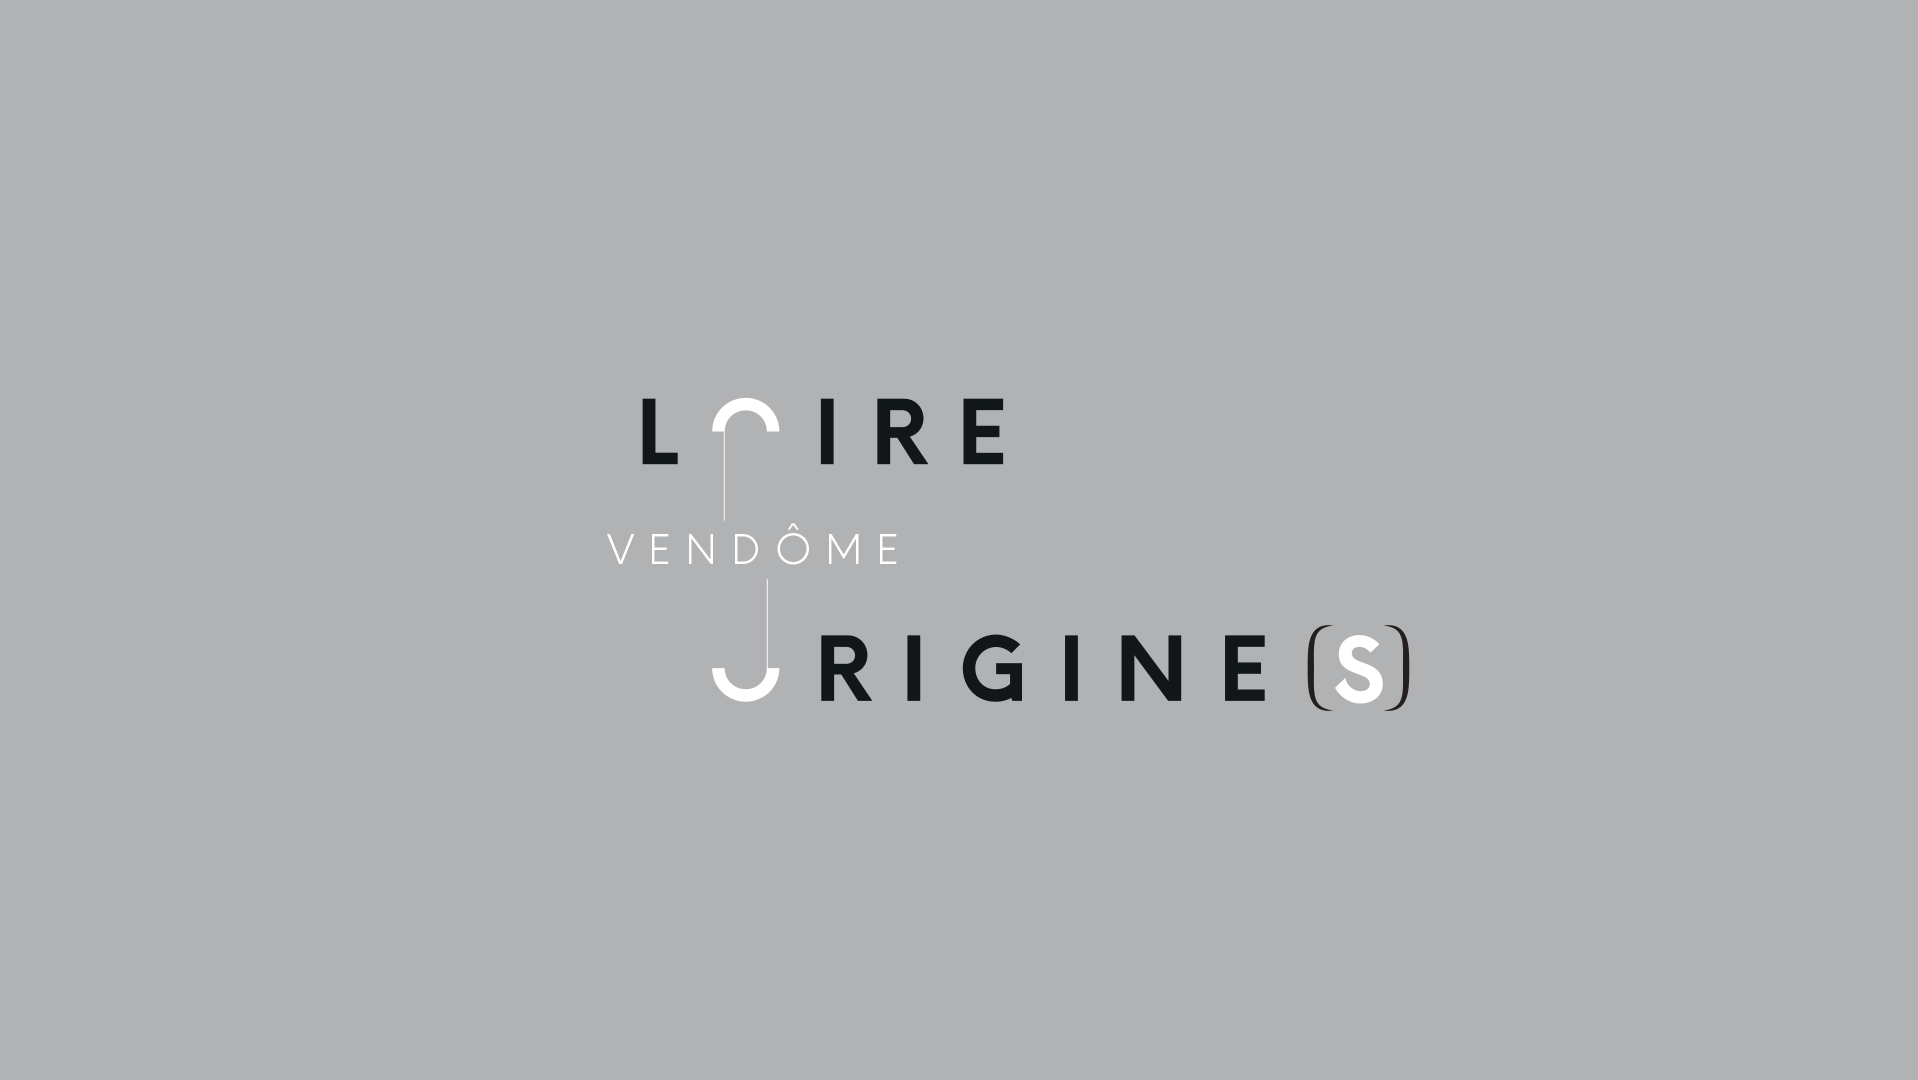 vendome » Loire Origine(S)